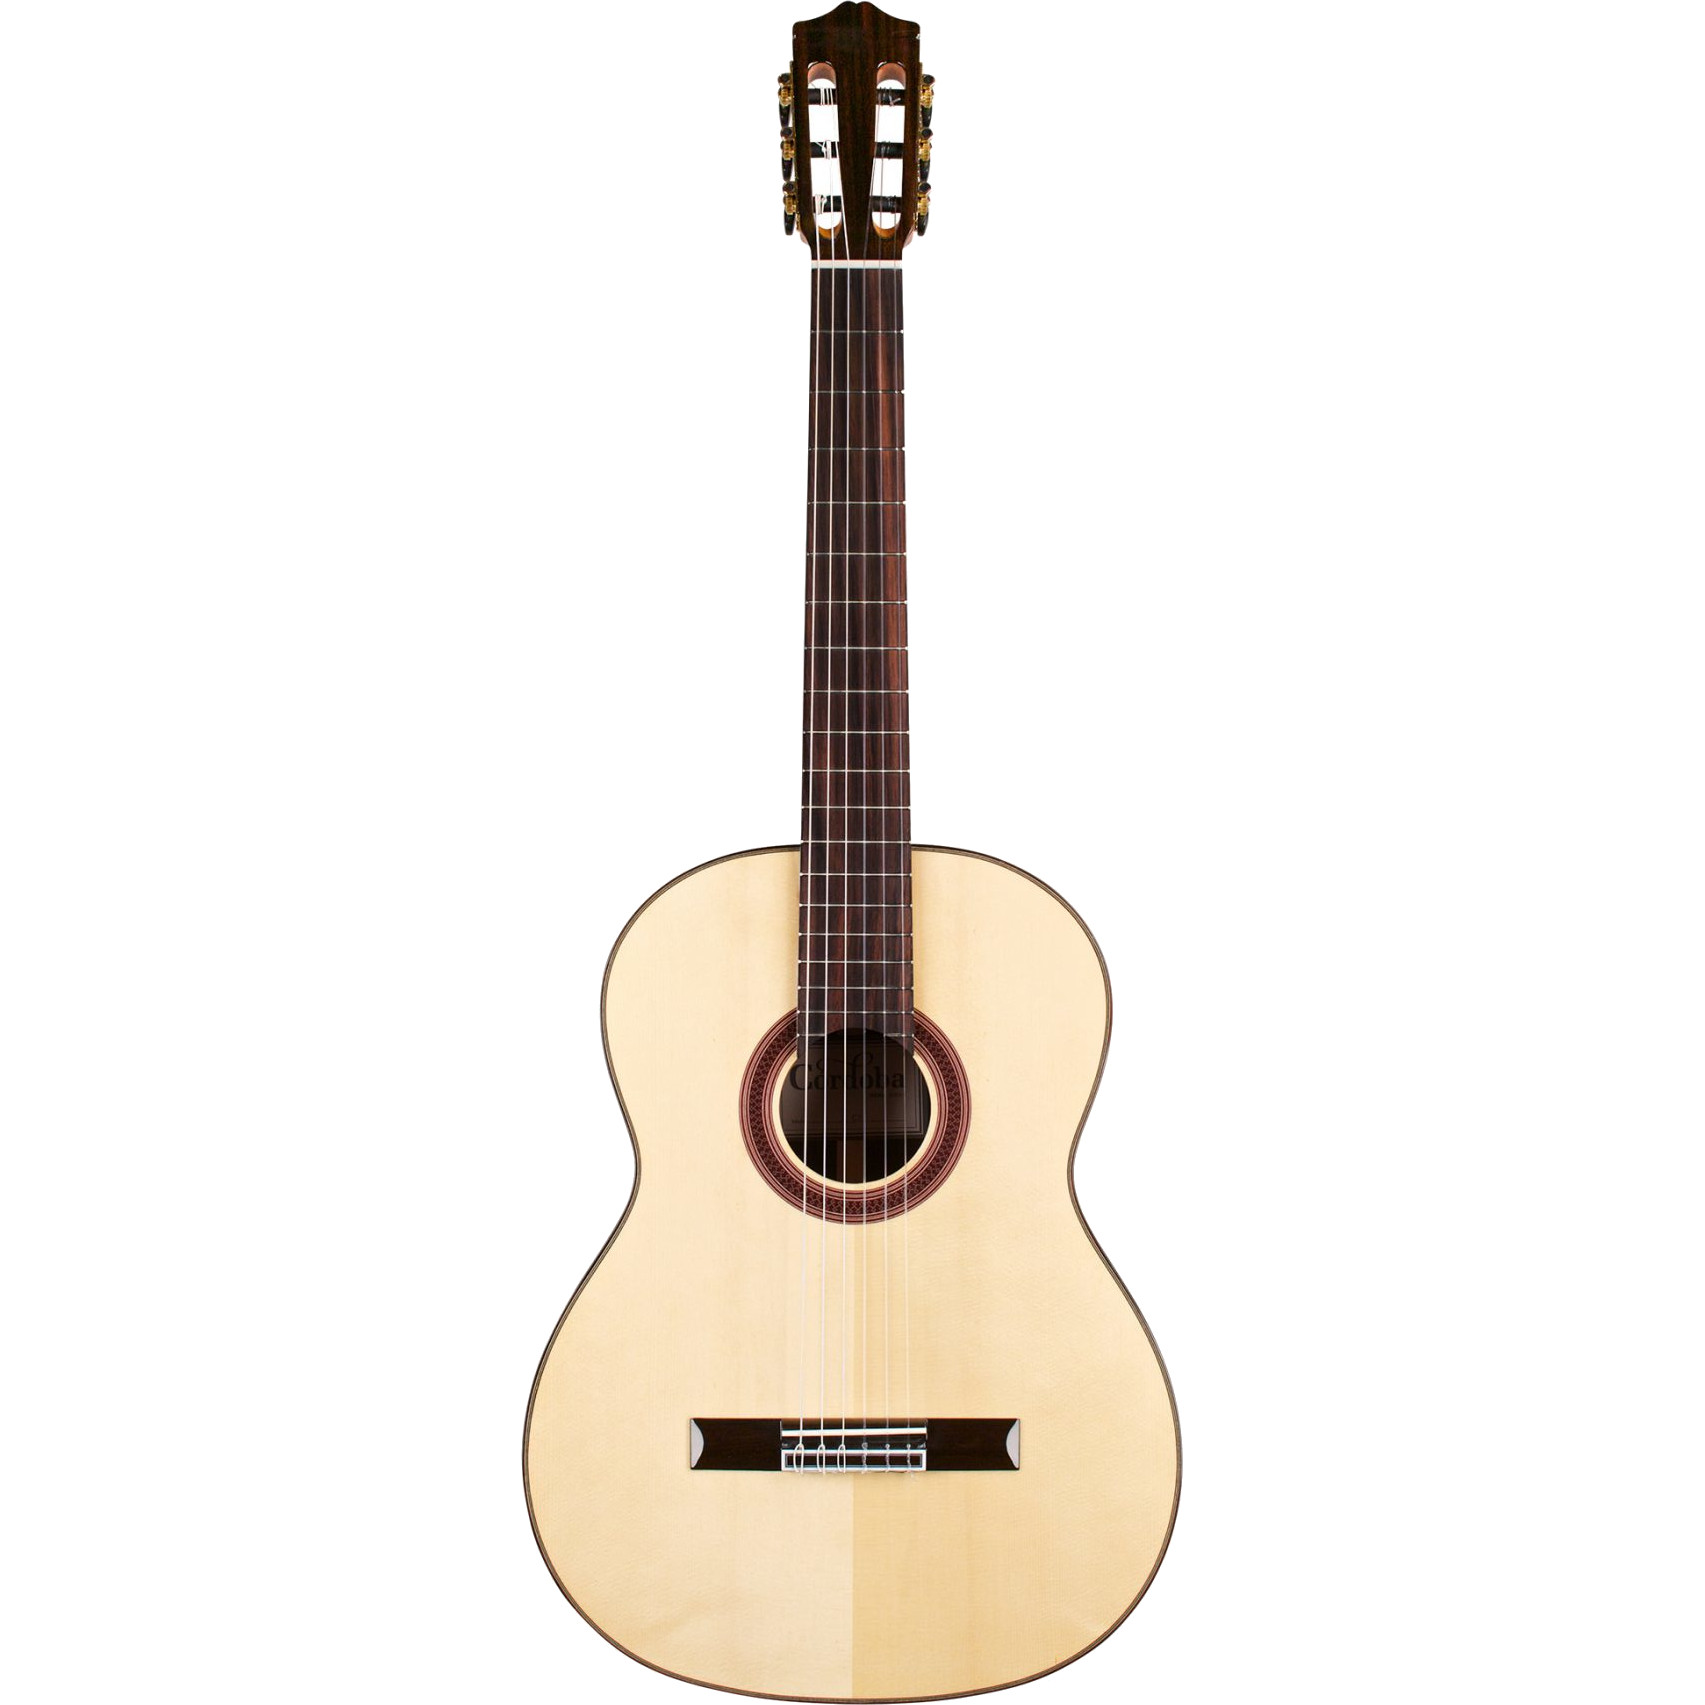 Cordoba C7 SP Iberia klassieke gitaar